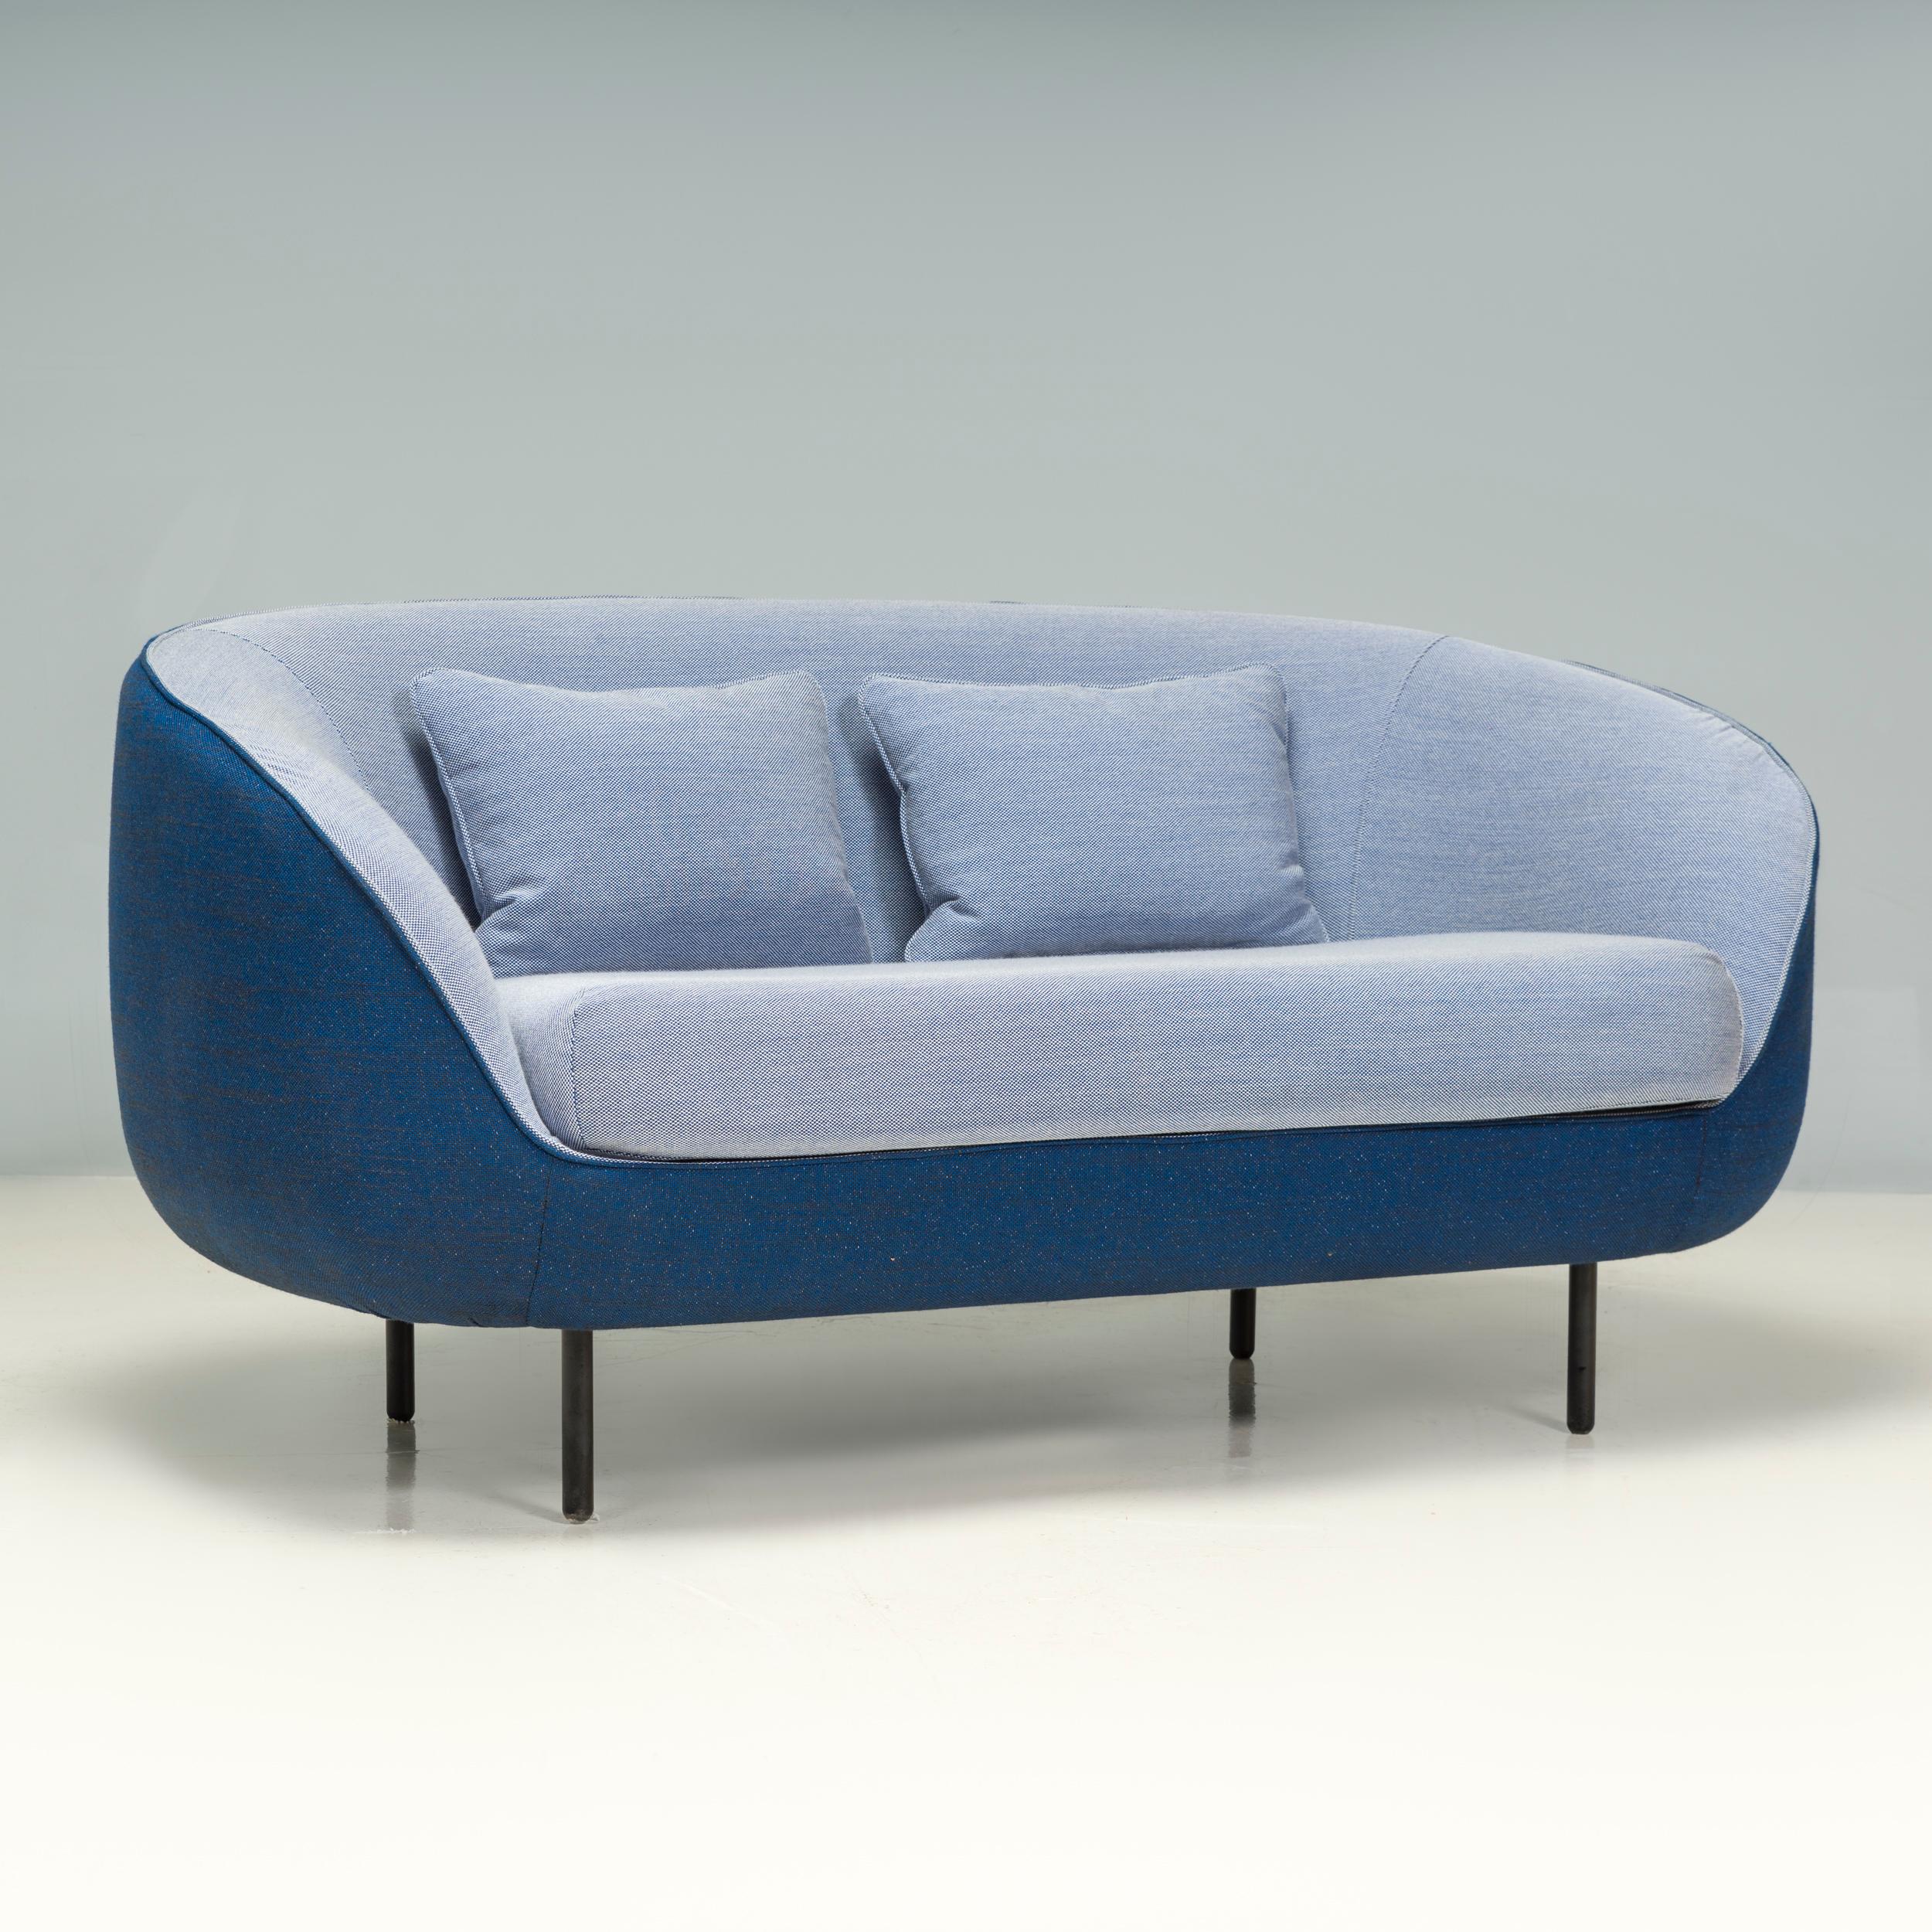 Initialement conçu par GamFratesi pour le fabricant de meubles danois Fredericia en 2012, ce canapé Haiku a été fabriqué en 2018.

Équilibrant parfaitement leurs origines italiennes et danoises en matière de design, le canapé Haiku est à la fois